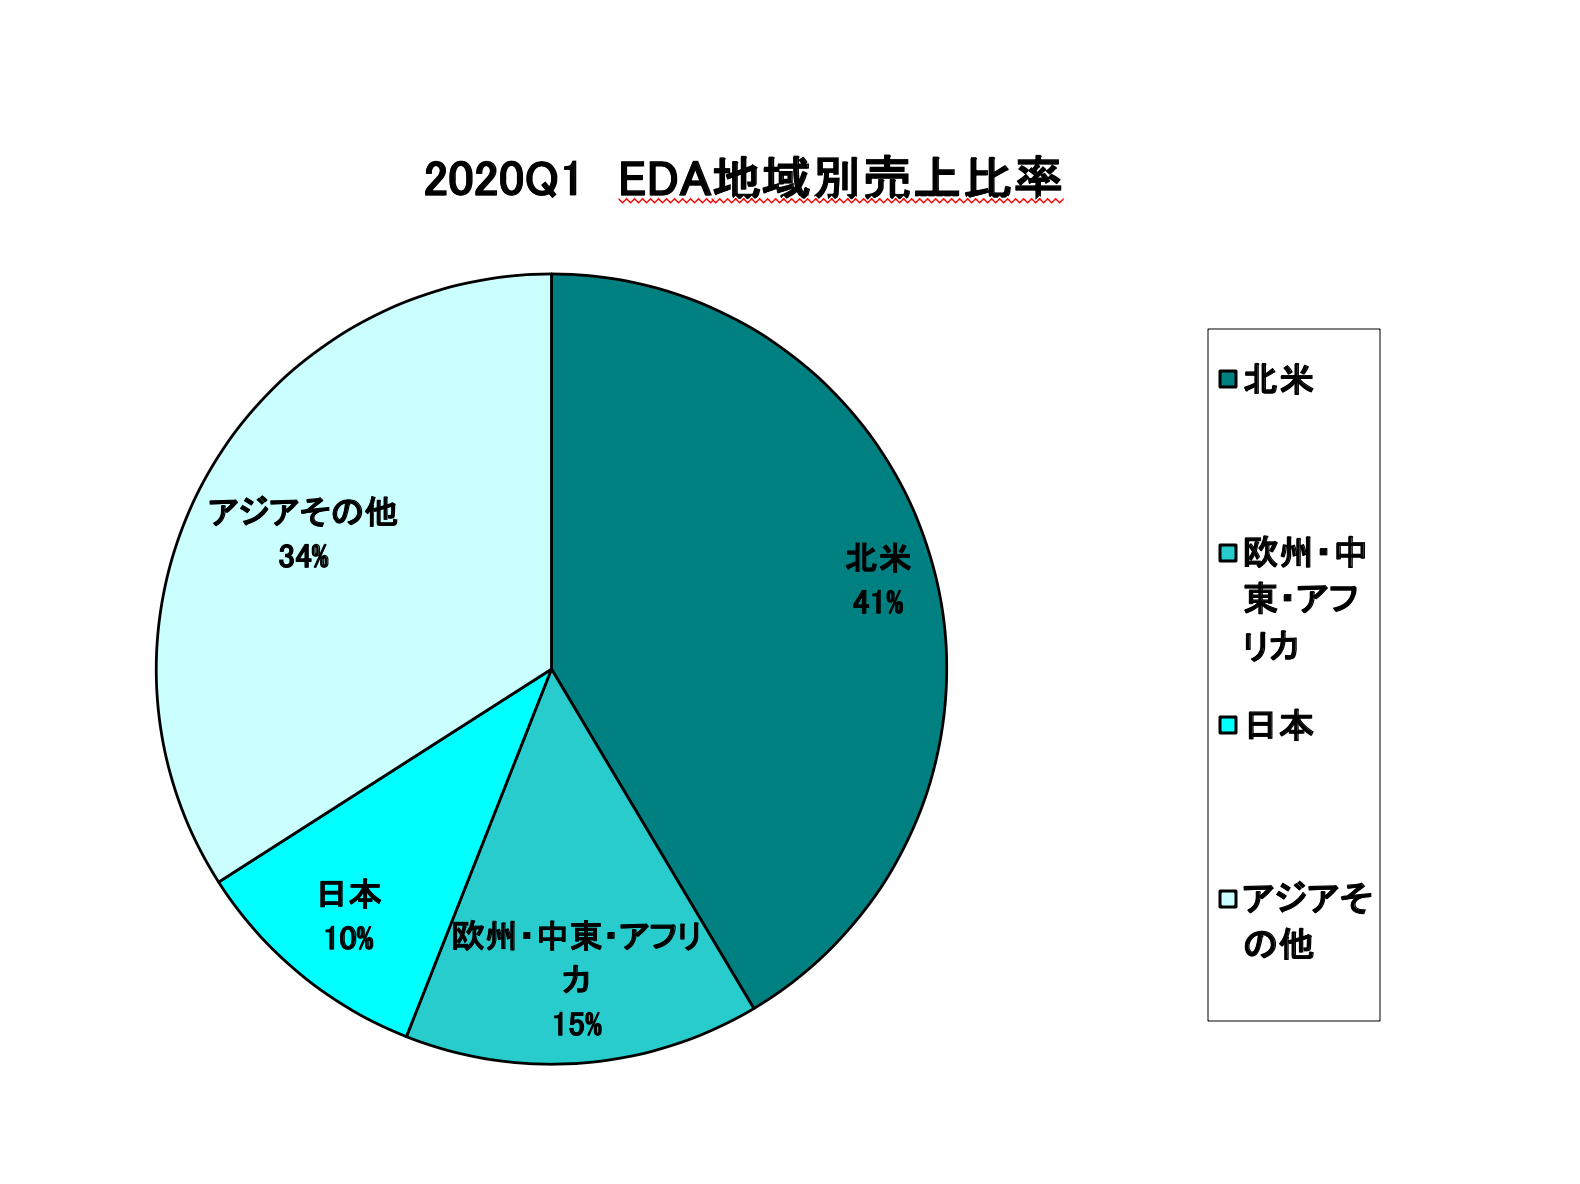 https://www.eda-express.com/%E3%82%B9%E3%82%AF%E3%83%AA%E3%83%BC%E3%83%B3%E3%82%B7%E3%83%A7%E3%83%83%E3%83%88%202020-07-14%2011.07.39.png